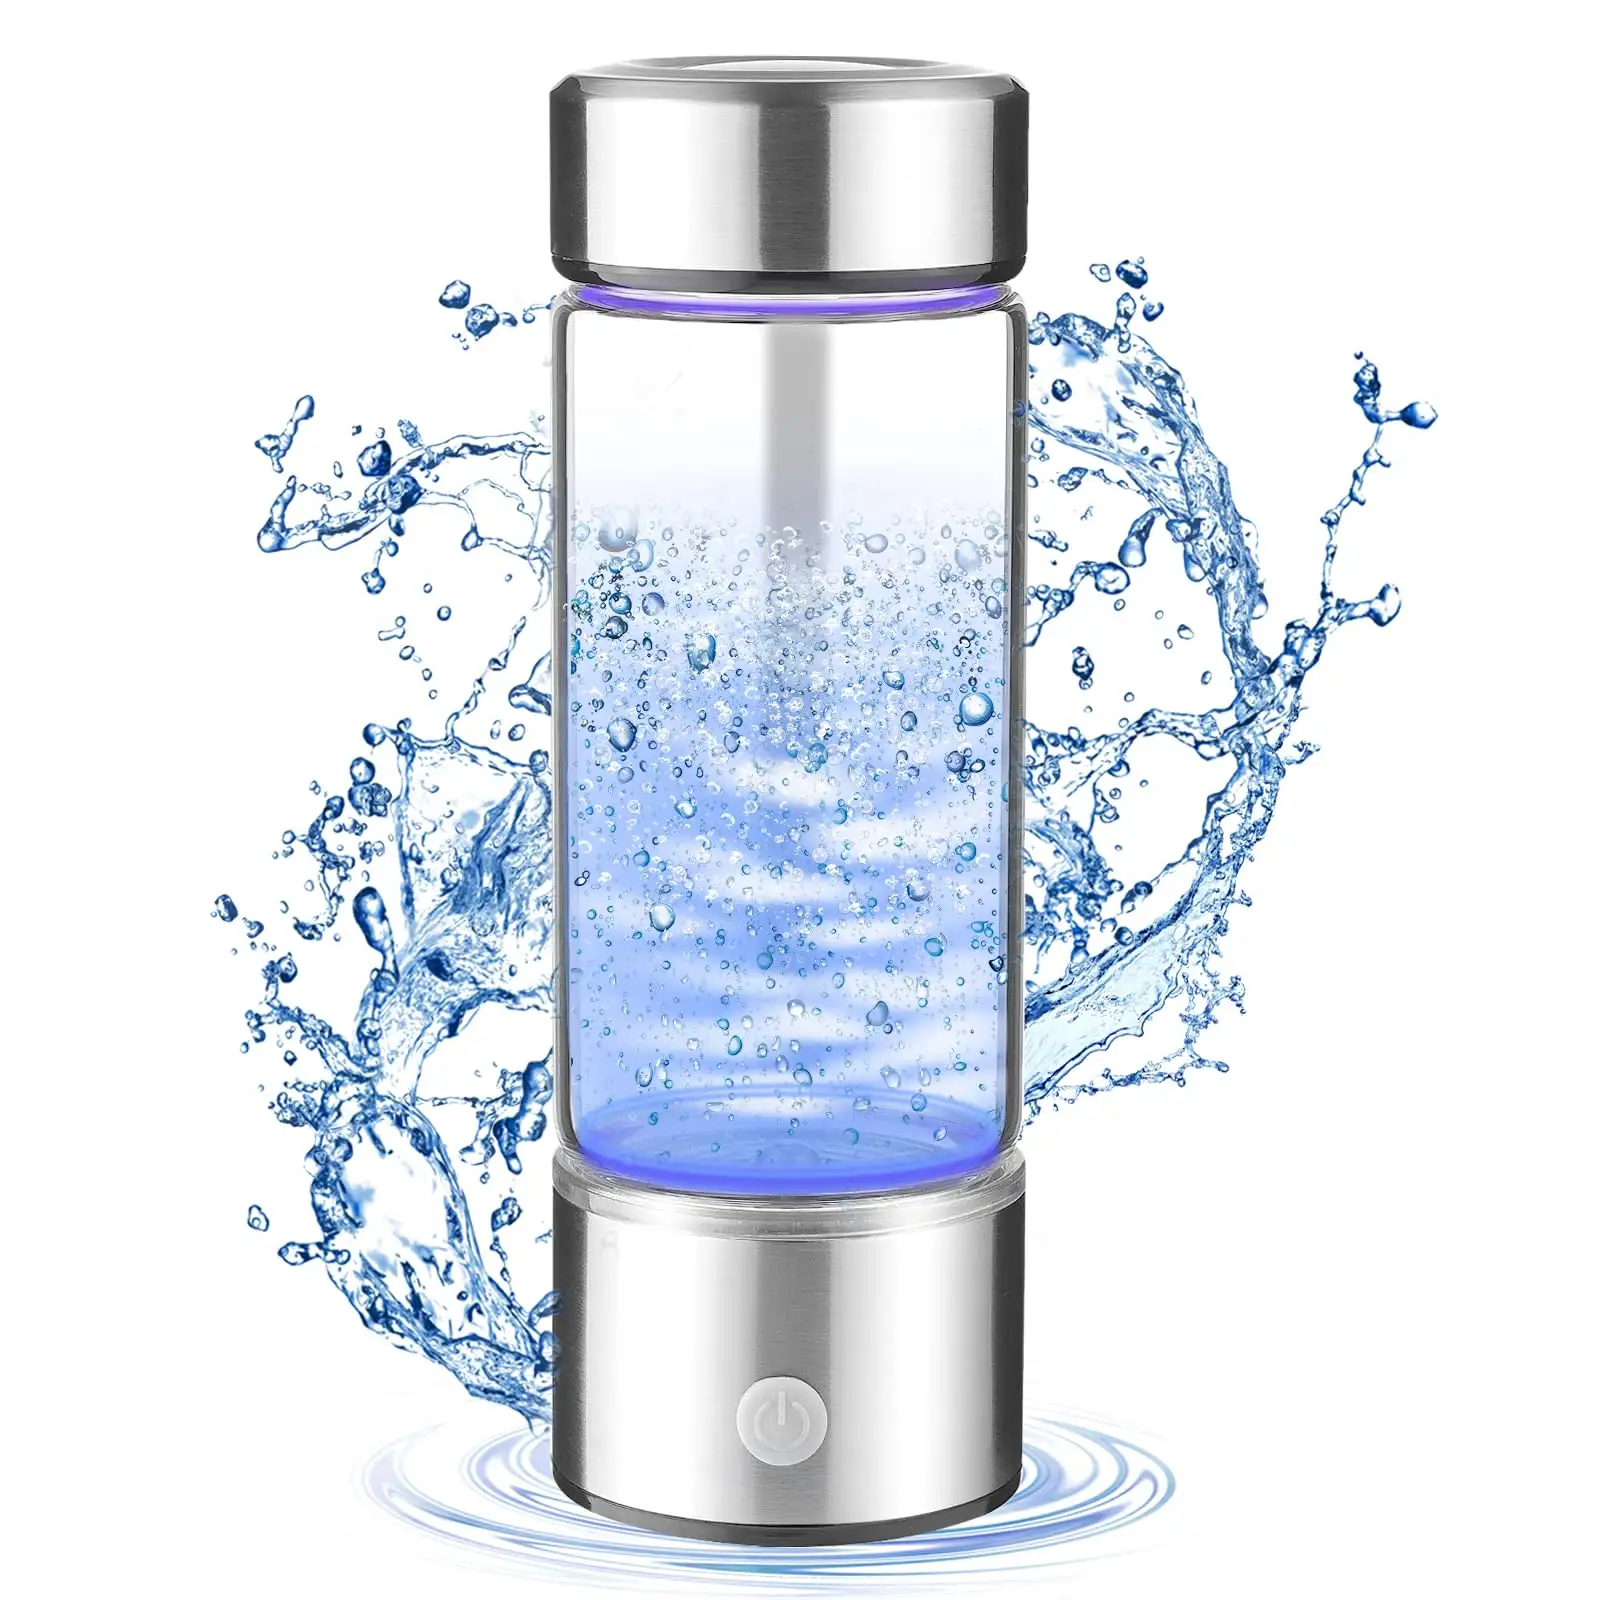 Hidrojen su şişesi jeneratör, 3 dak hızlı elektroliz su iyonlaştırıcı makinesi ofis için uygun